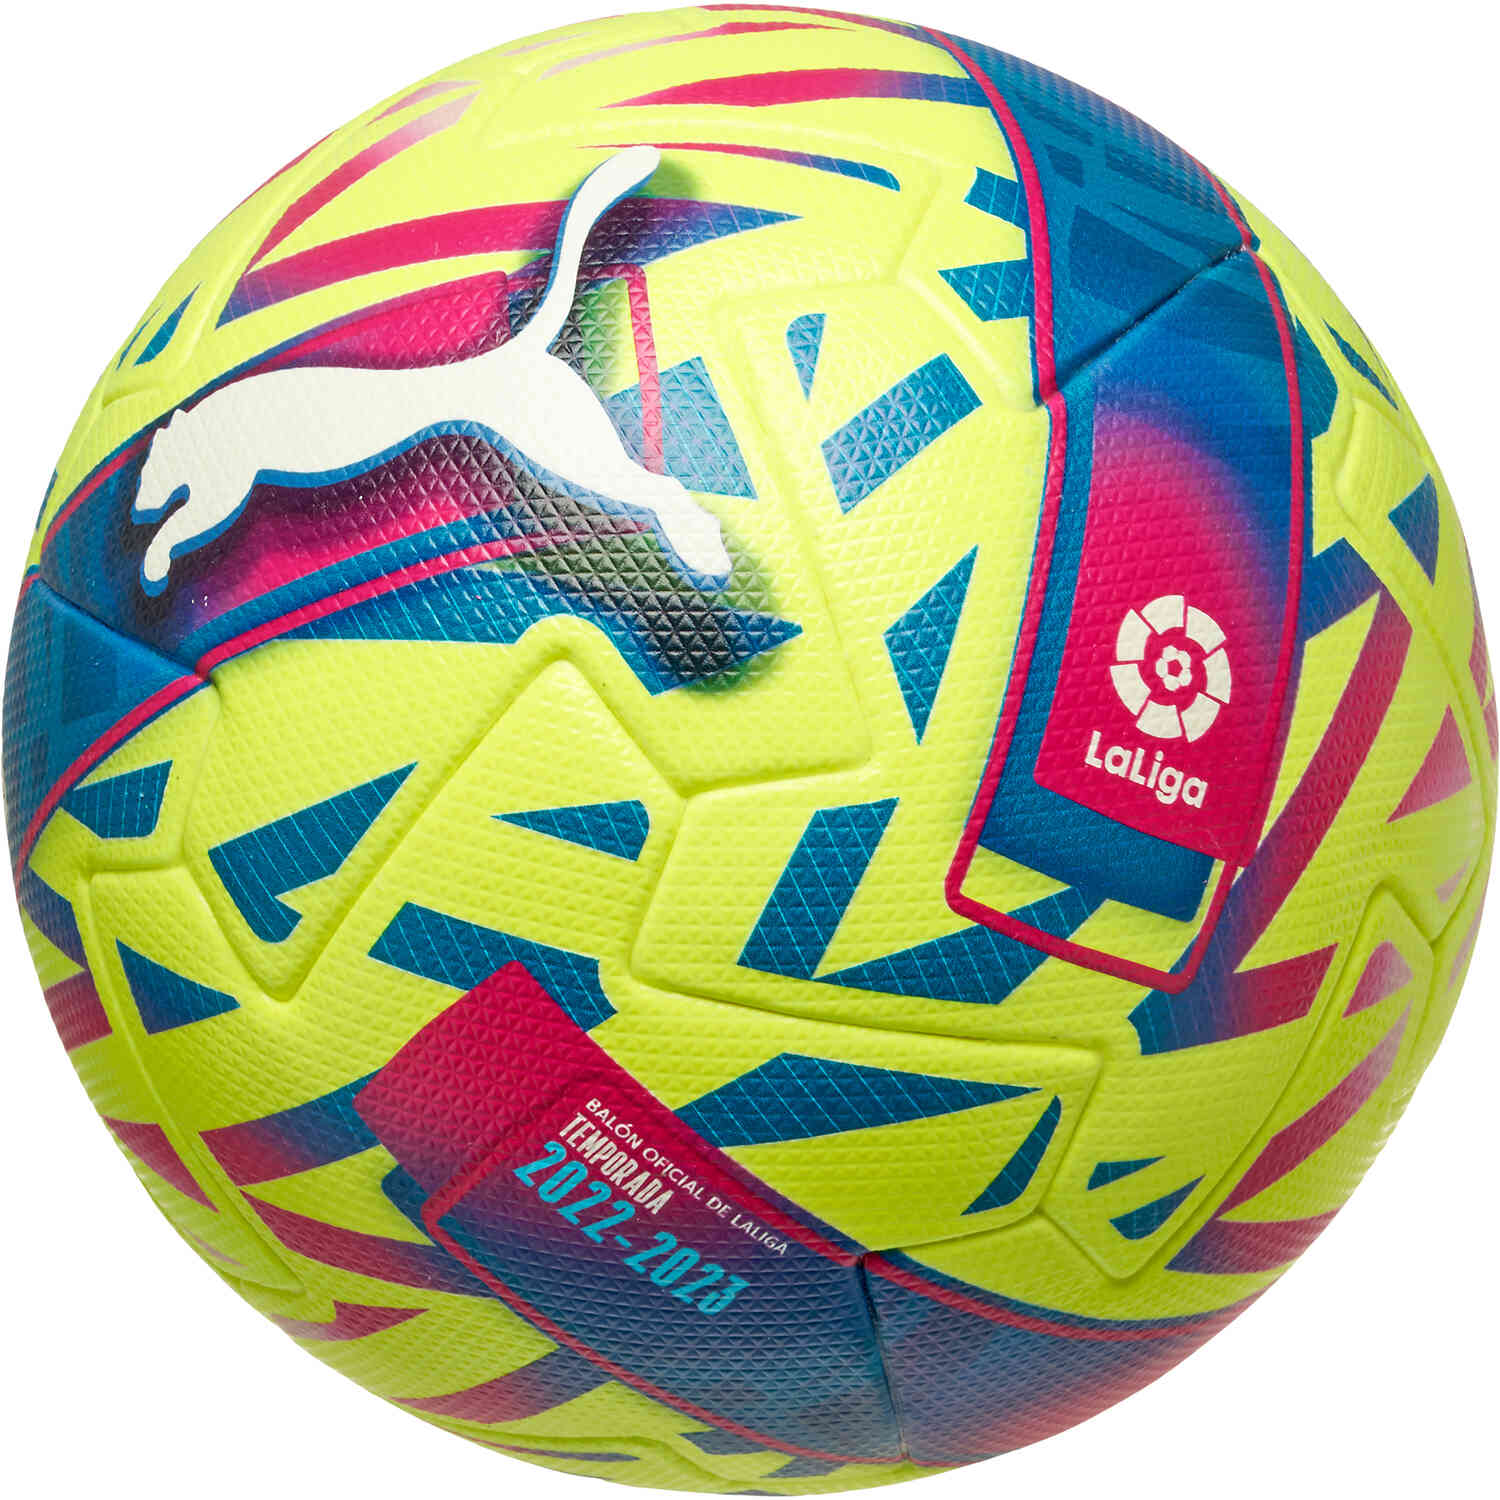 PUMA La Liga Orbita 1 Official Match Soccer Ball – 22/23